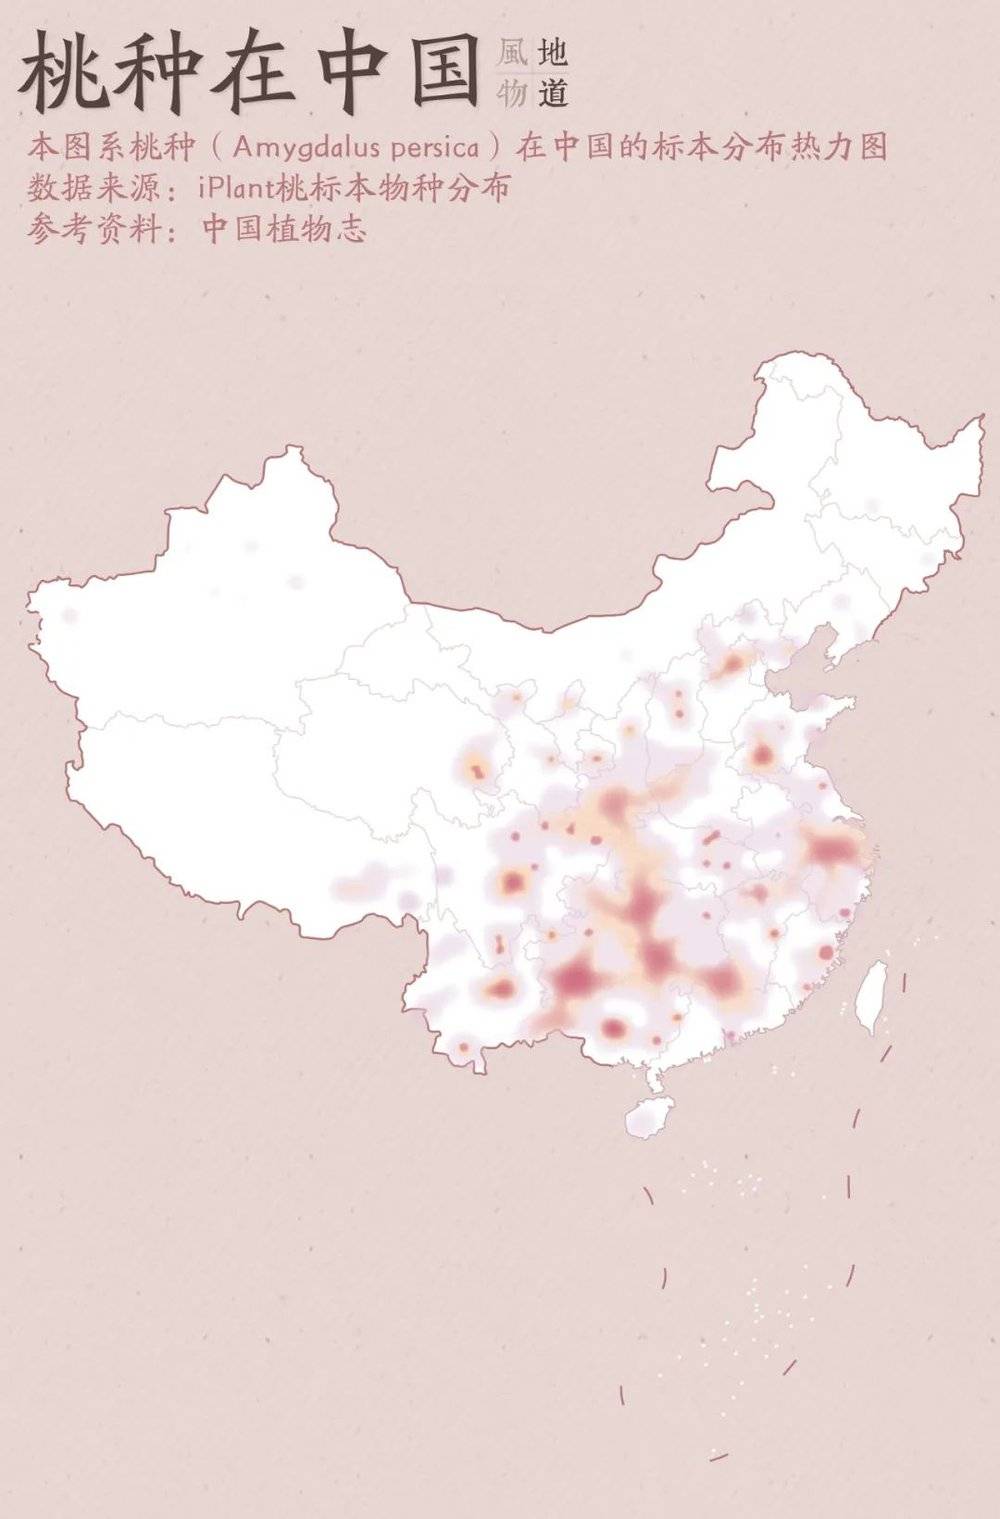 中国地图简图黑白轮廓图片